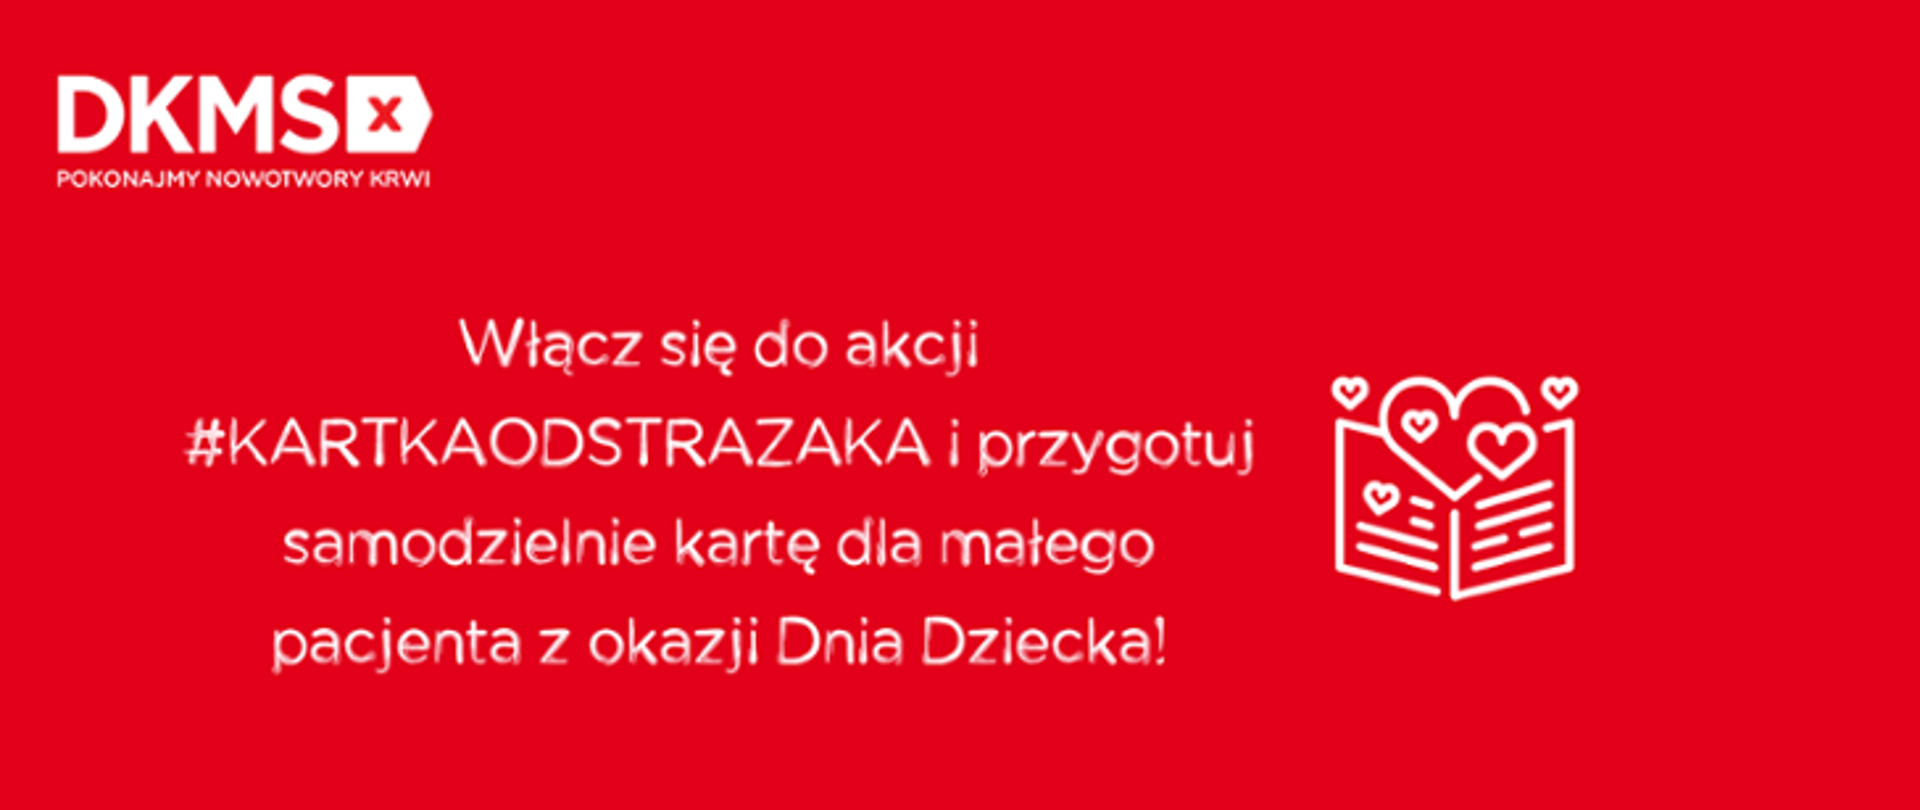 #kartkaodstrazaka DKMS ogłoszenie o akcji